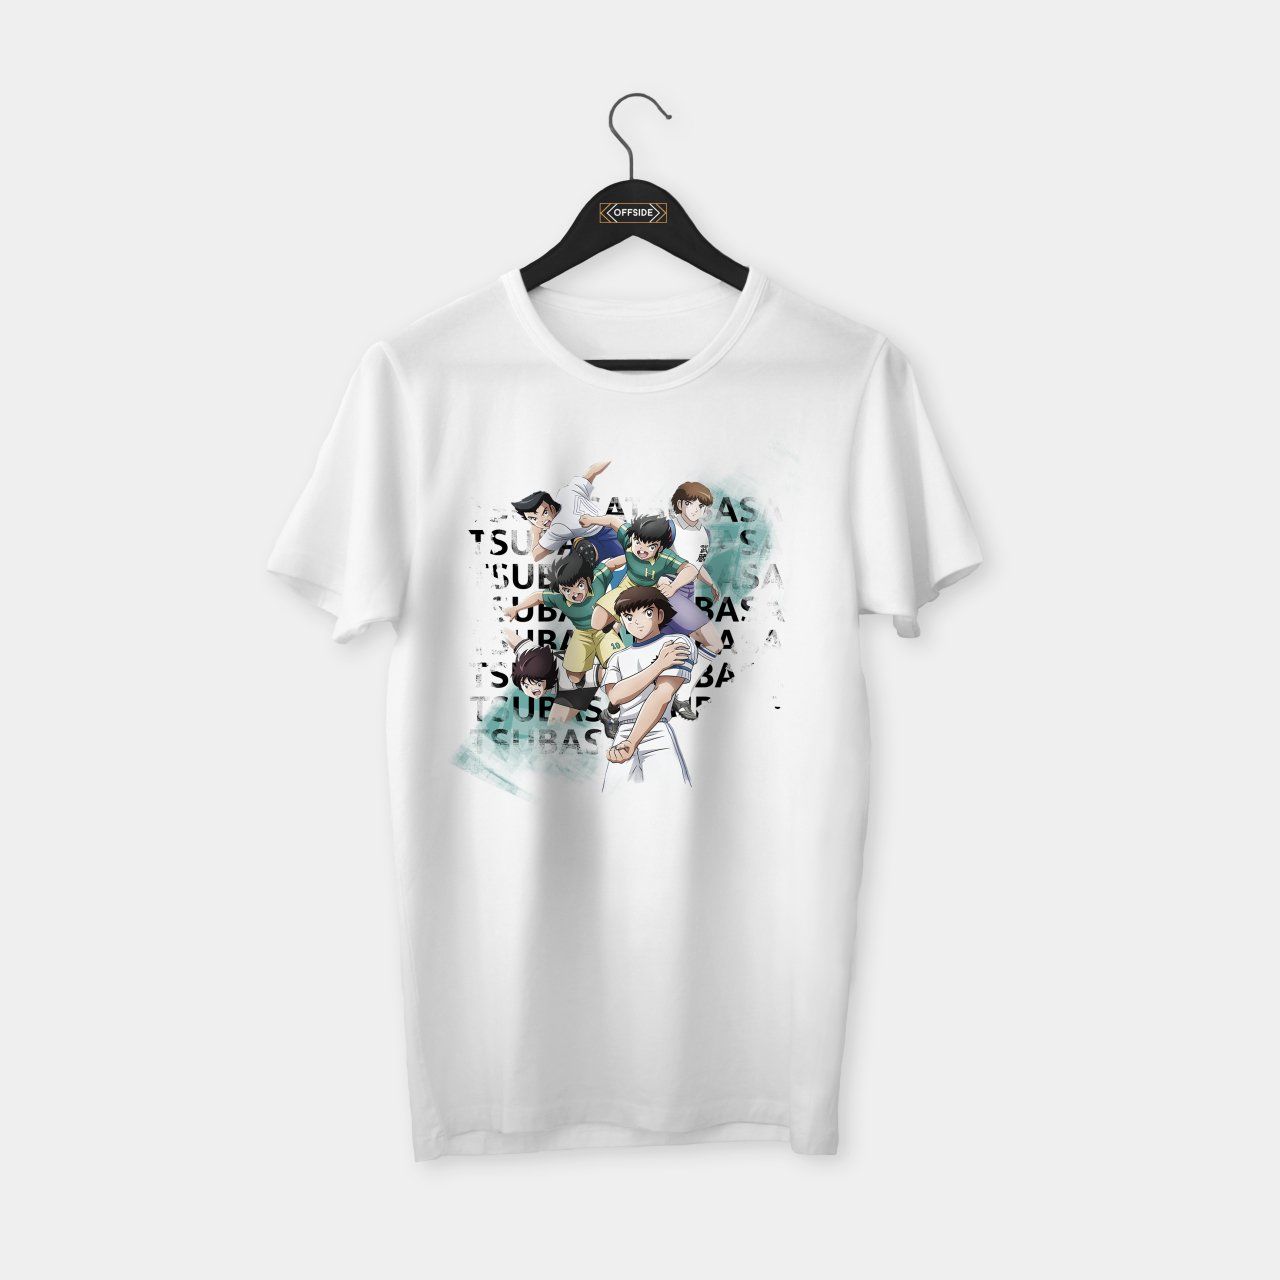 Tsubasa & Others T-shirt